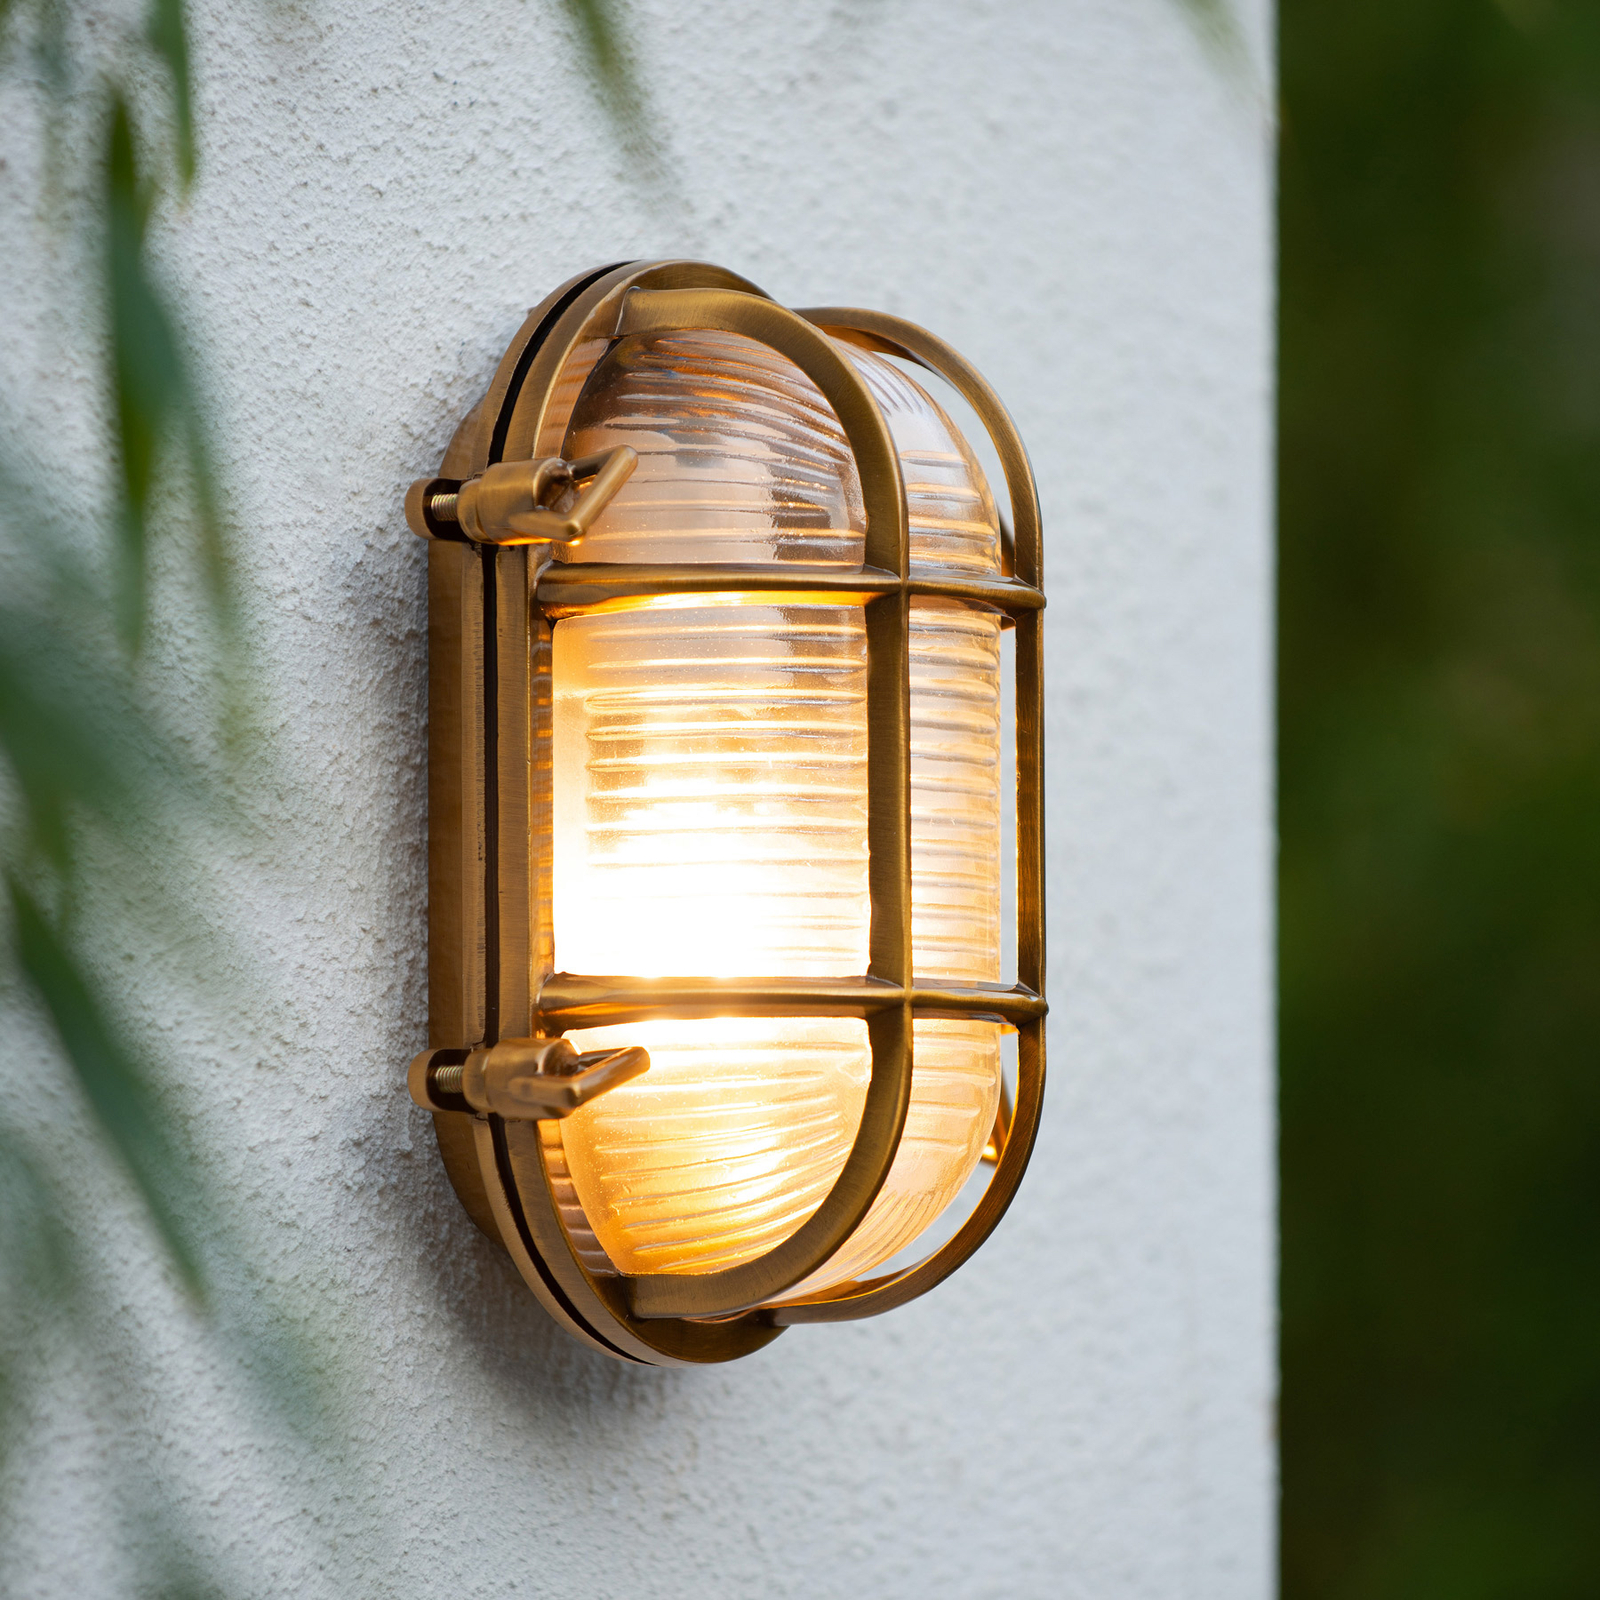 Dudley outdoor wall light, brass